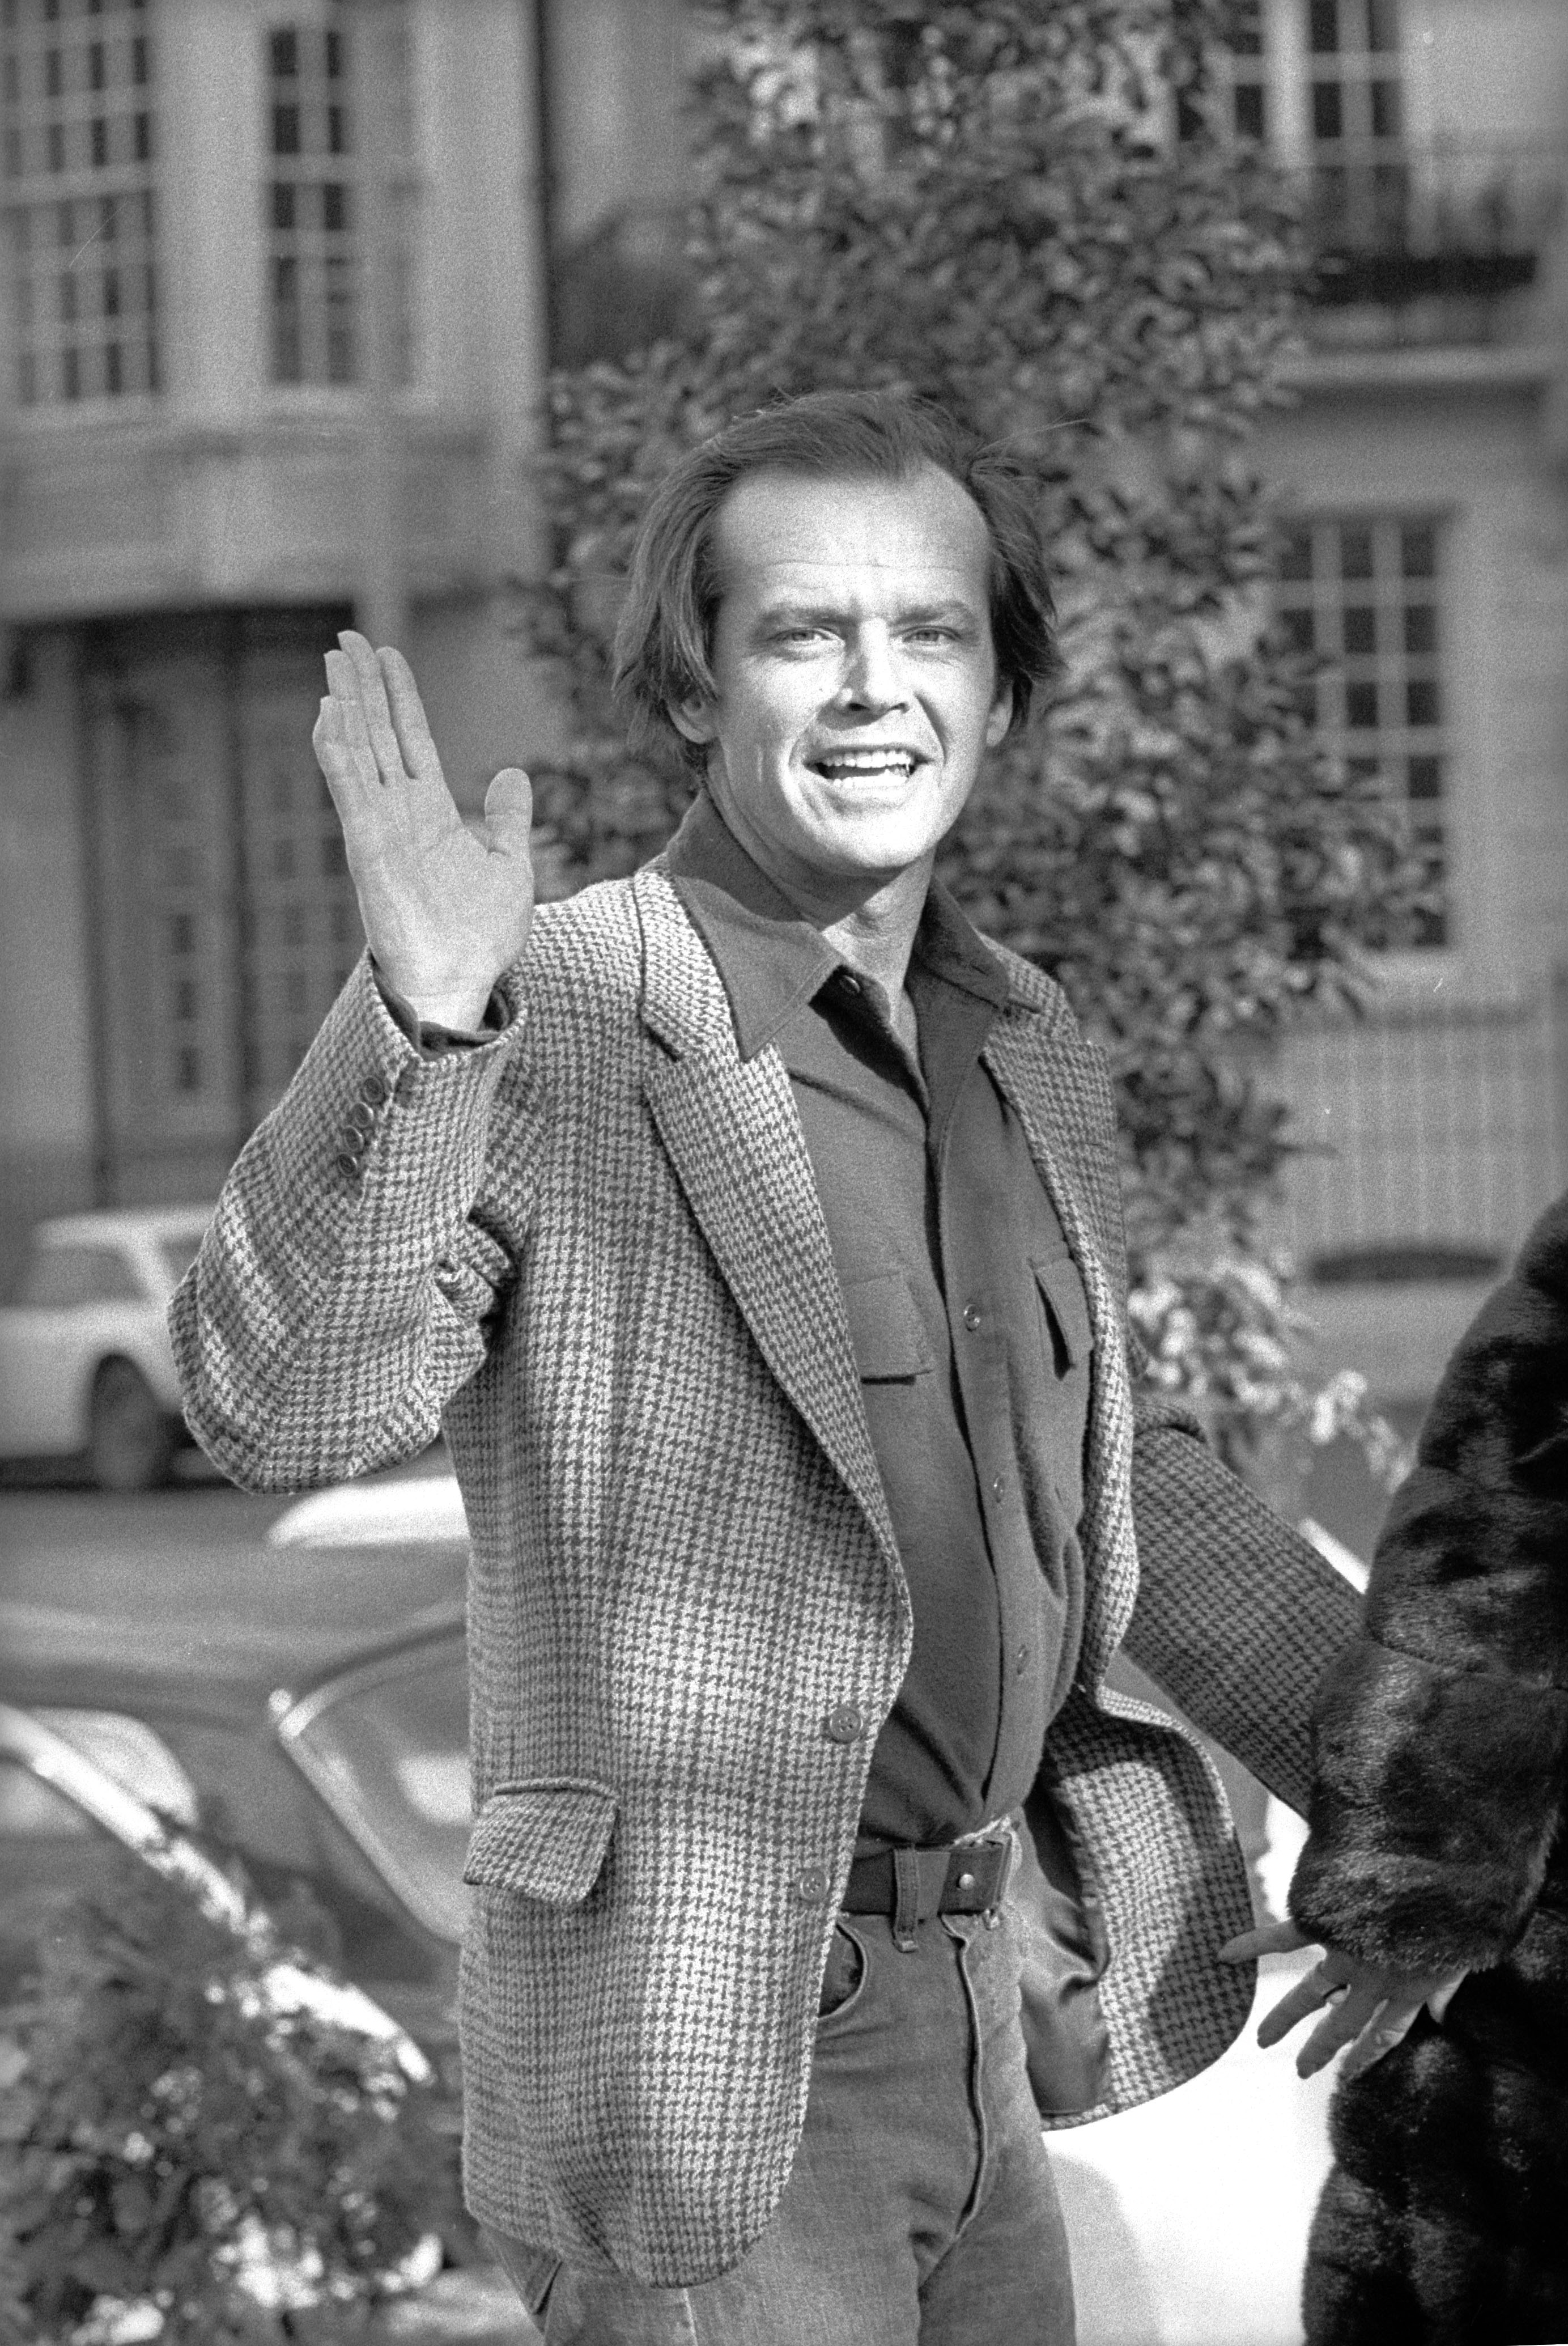 Jack Nicholson lors de la conférence de presse de "One Flyw Over the Cuckoo's Nest", 9 février 1976 | Photo : Getty Images